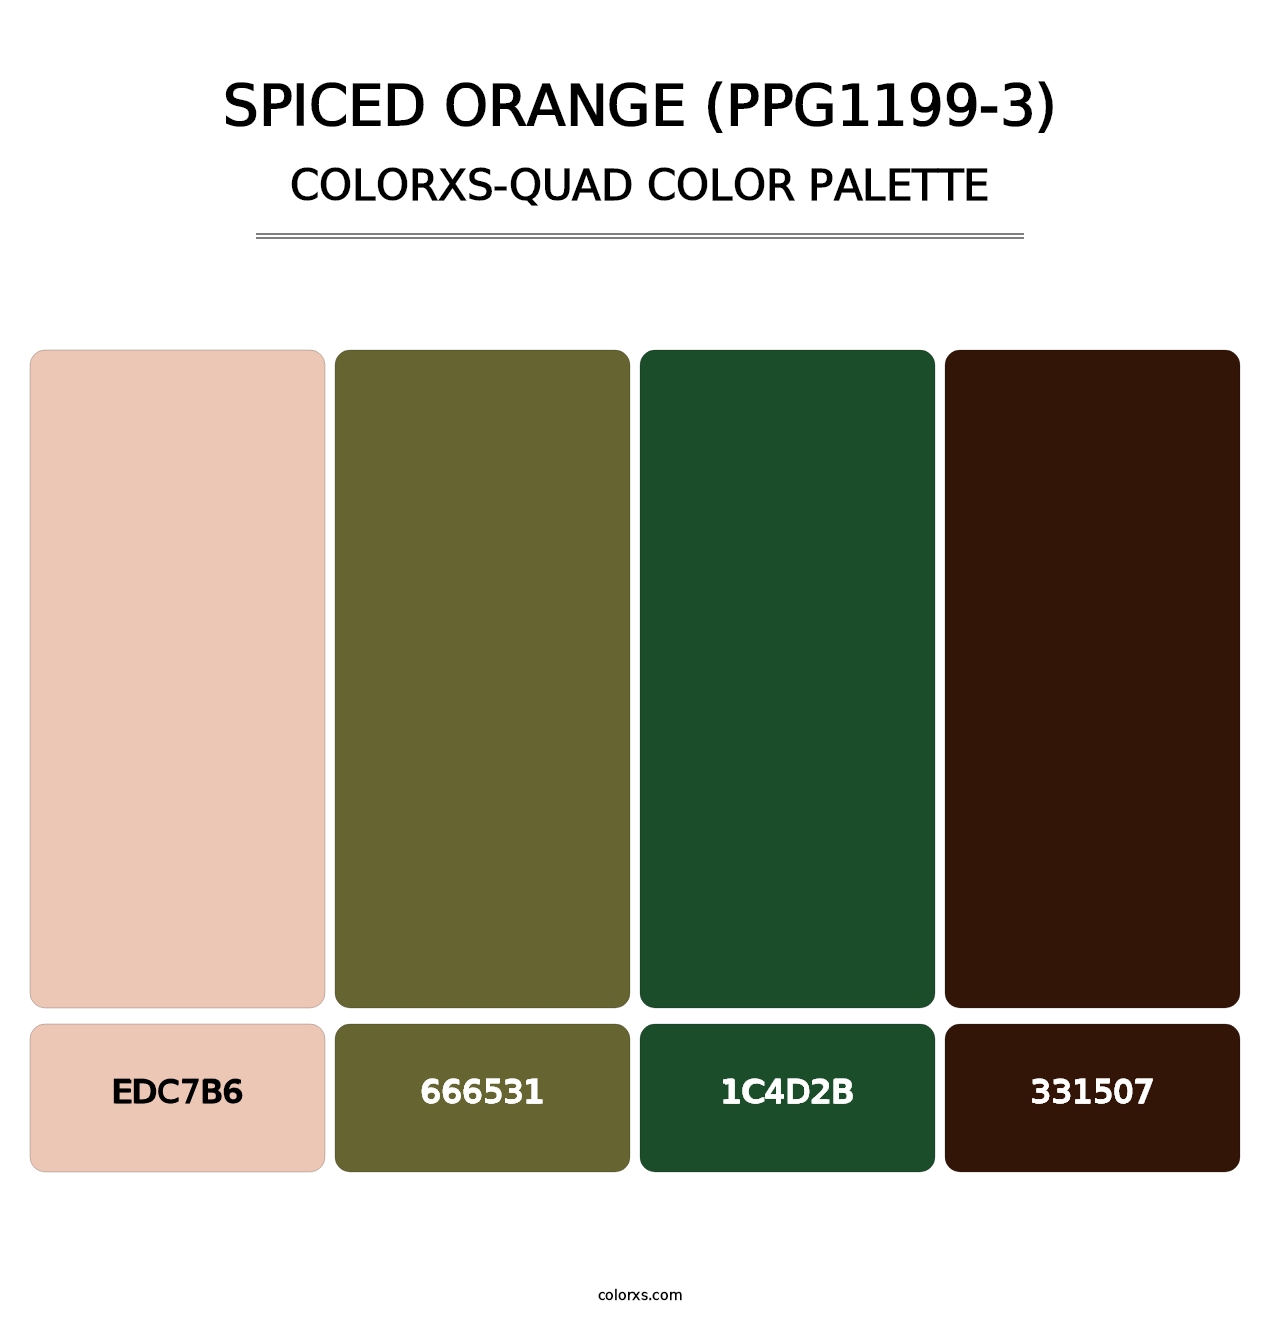 Spiced Orange (PPG1199-3) - Colorxs Quad Palette